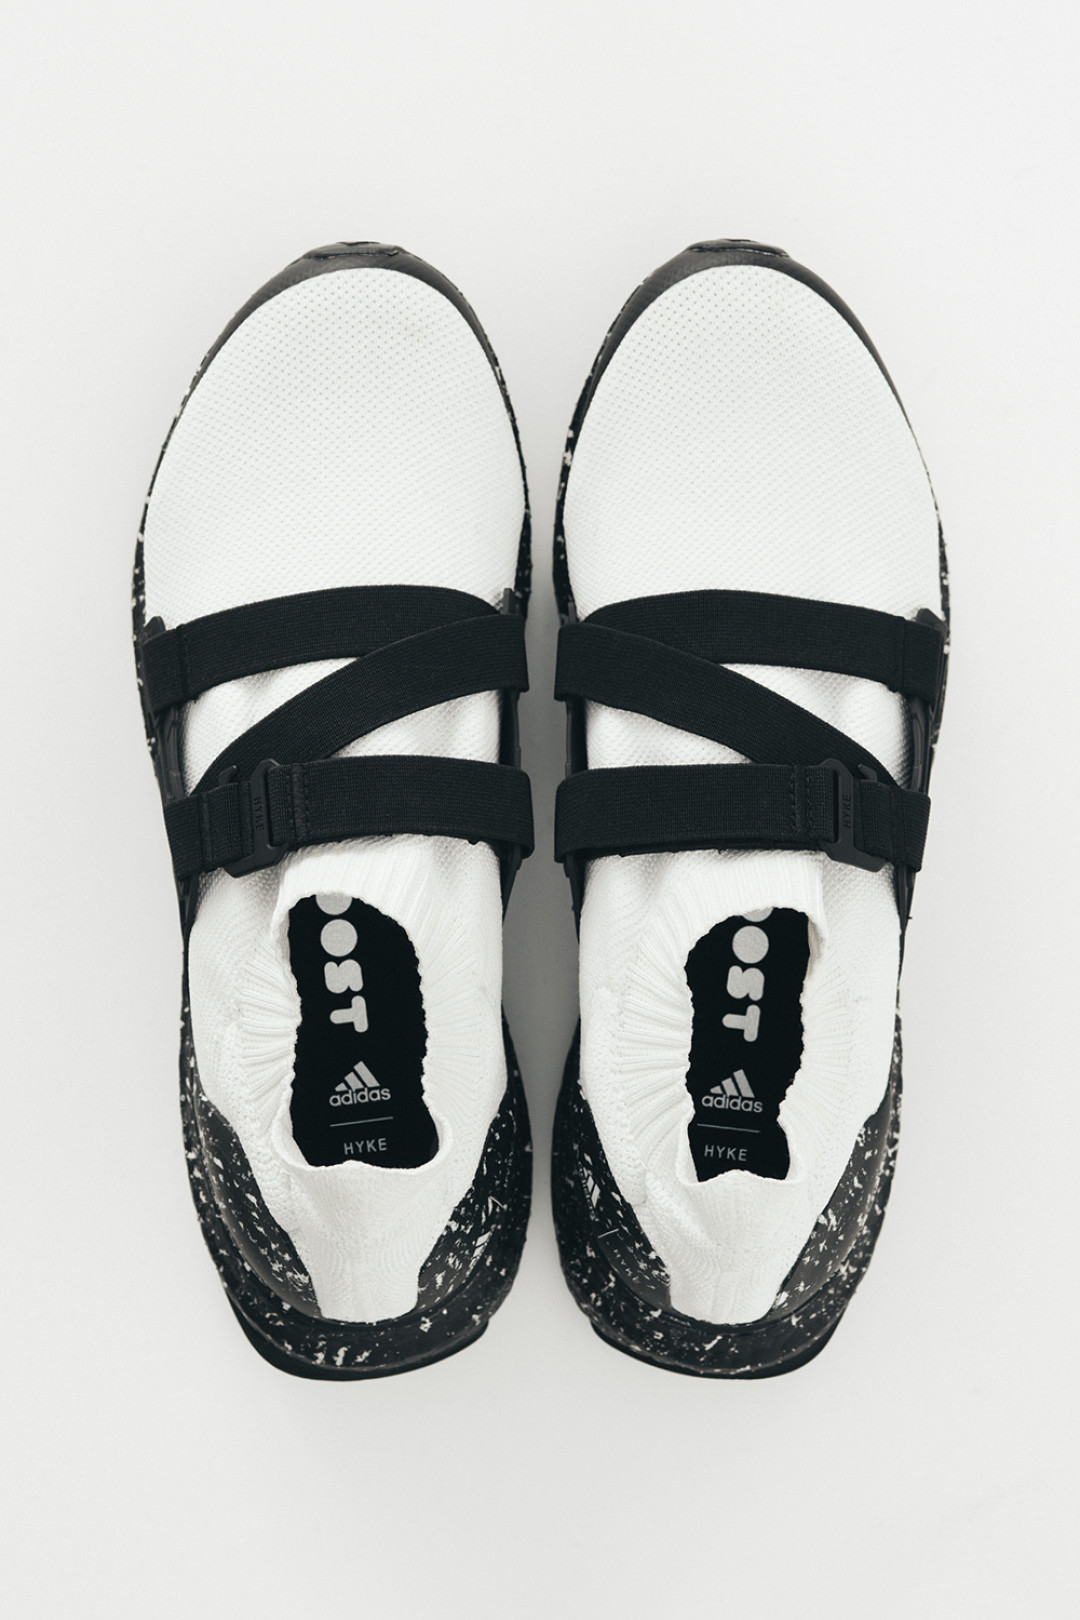 アディダス × ハイクがコラボラインを発表。完売続出の“adidas Originals by HYKE” フットウエアが再リリース